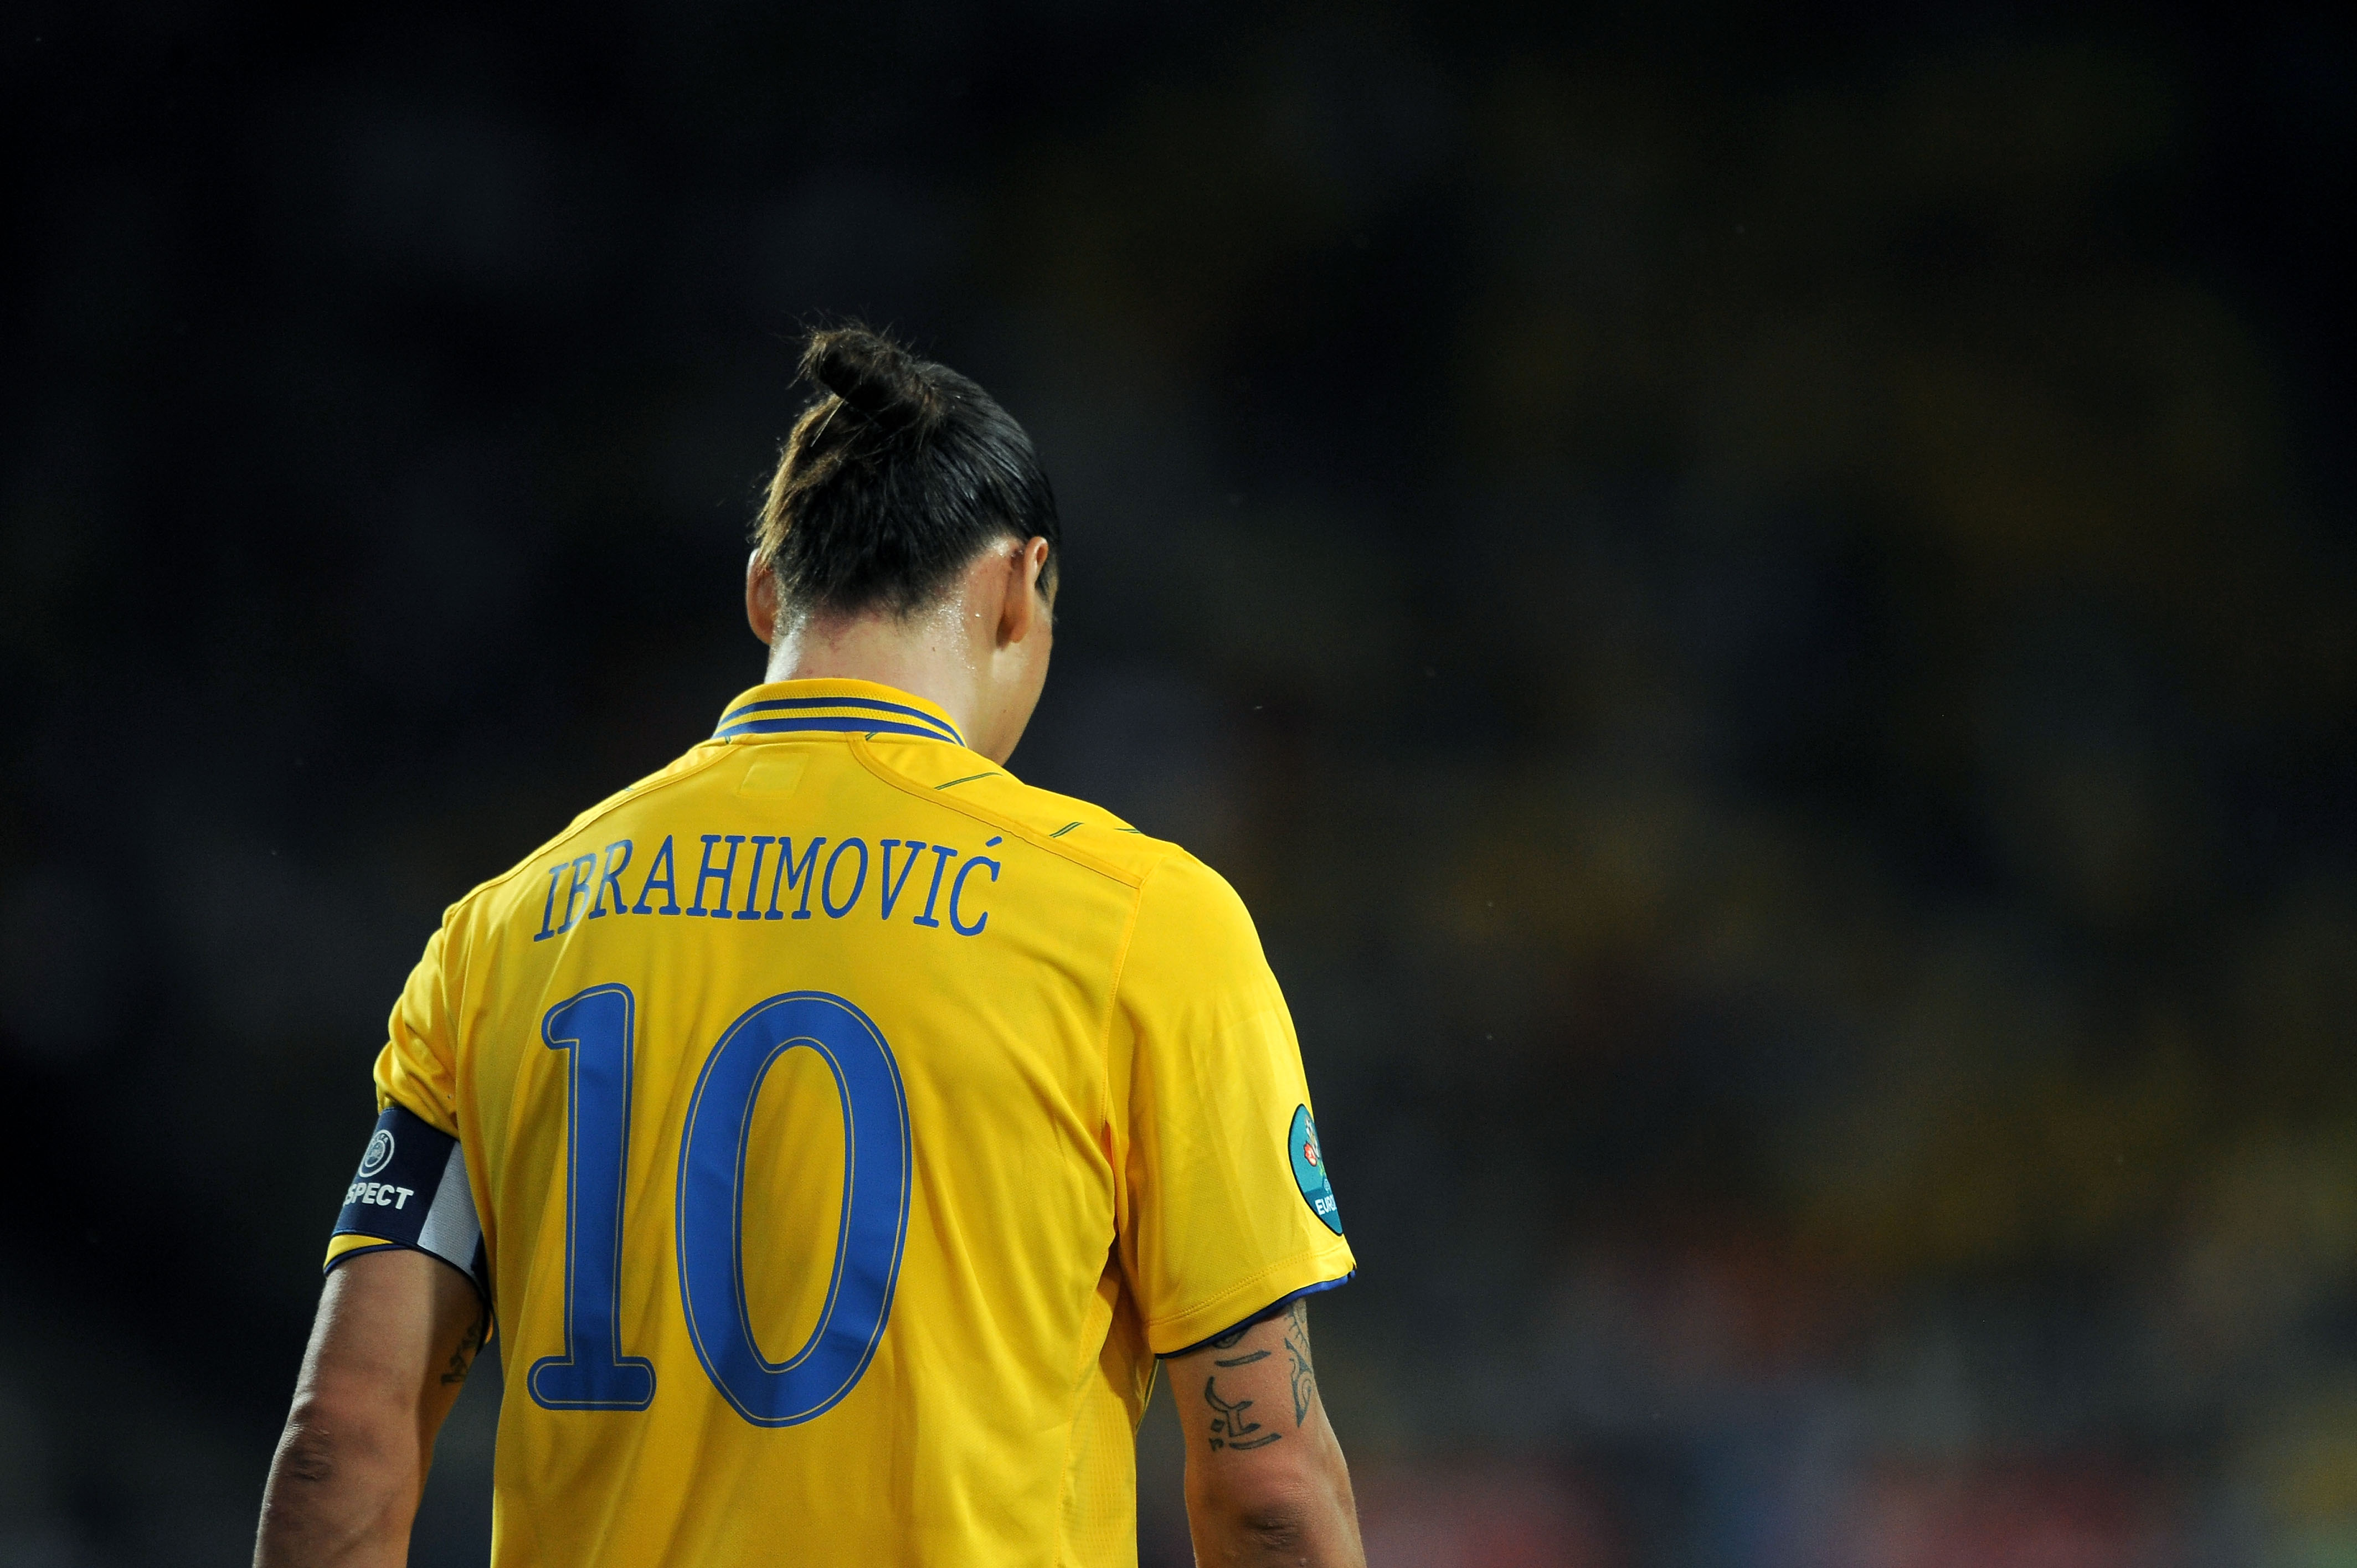 Zlatan Ibrahimovic är det stora orosmomentet i Sverige, enligt Blanc.